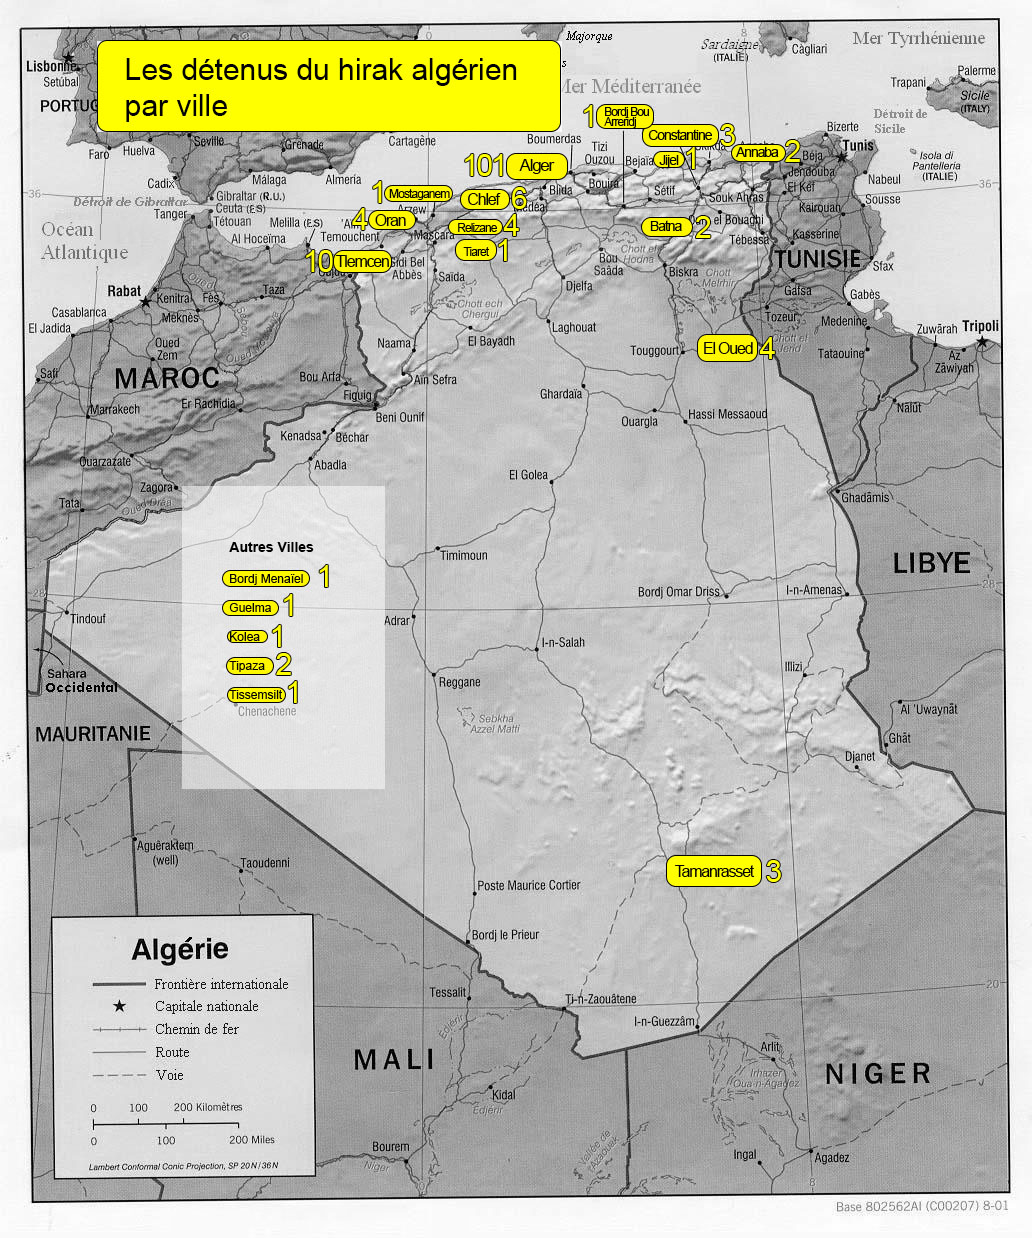 Carte des détenus du hirak algérien par ville, au 19 décembre 2019 (MEE)